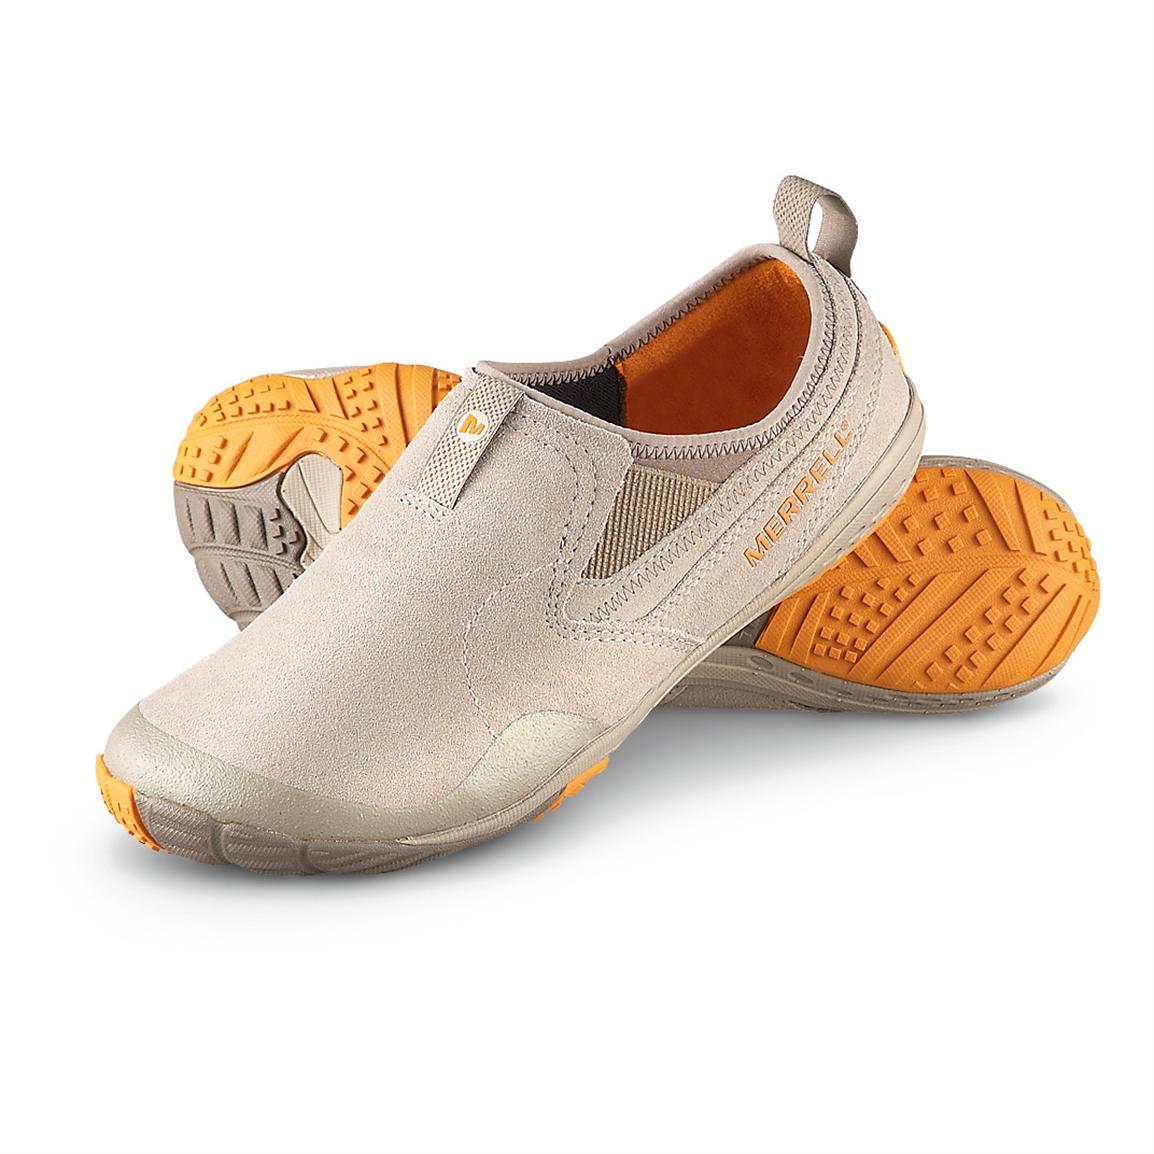 Men's Merrell® Barefoot Slant Glove Slip - on Shoes, Aluminum - 233530 ...